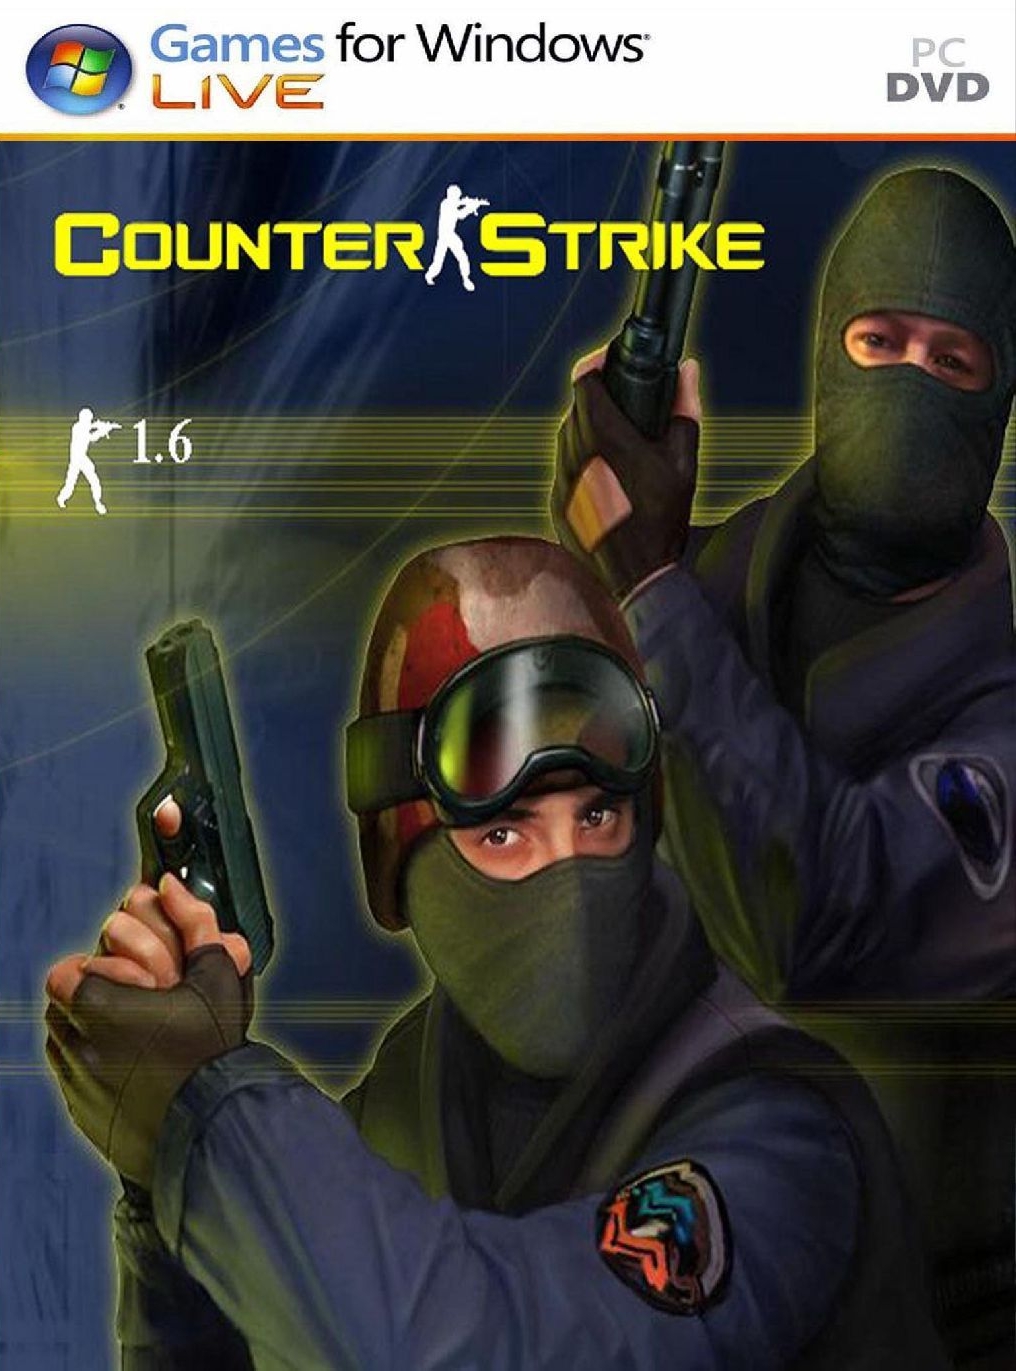 Counter strike 1.6 portable 2016 pc 1 link espanol descargar